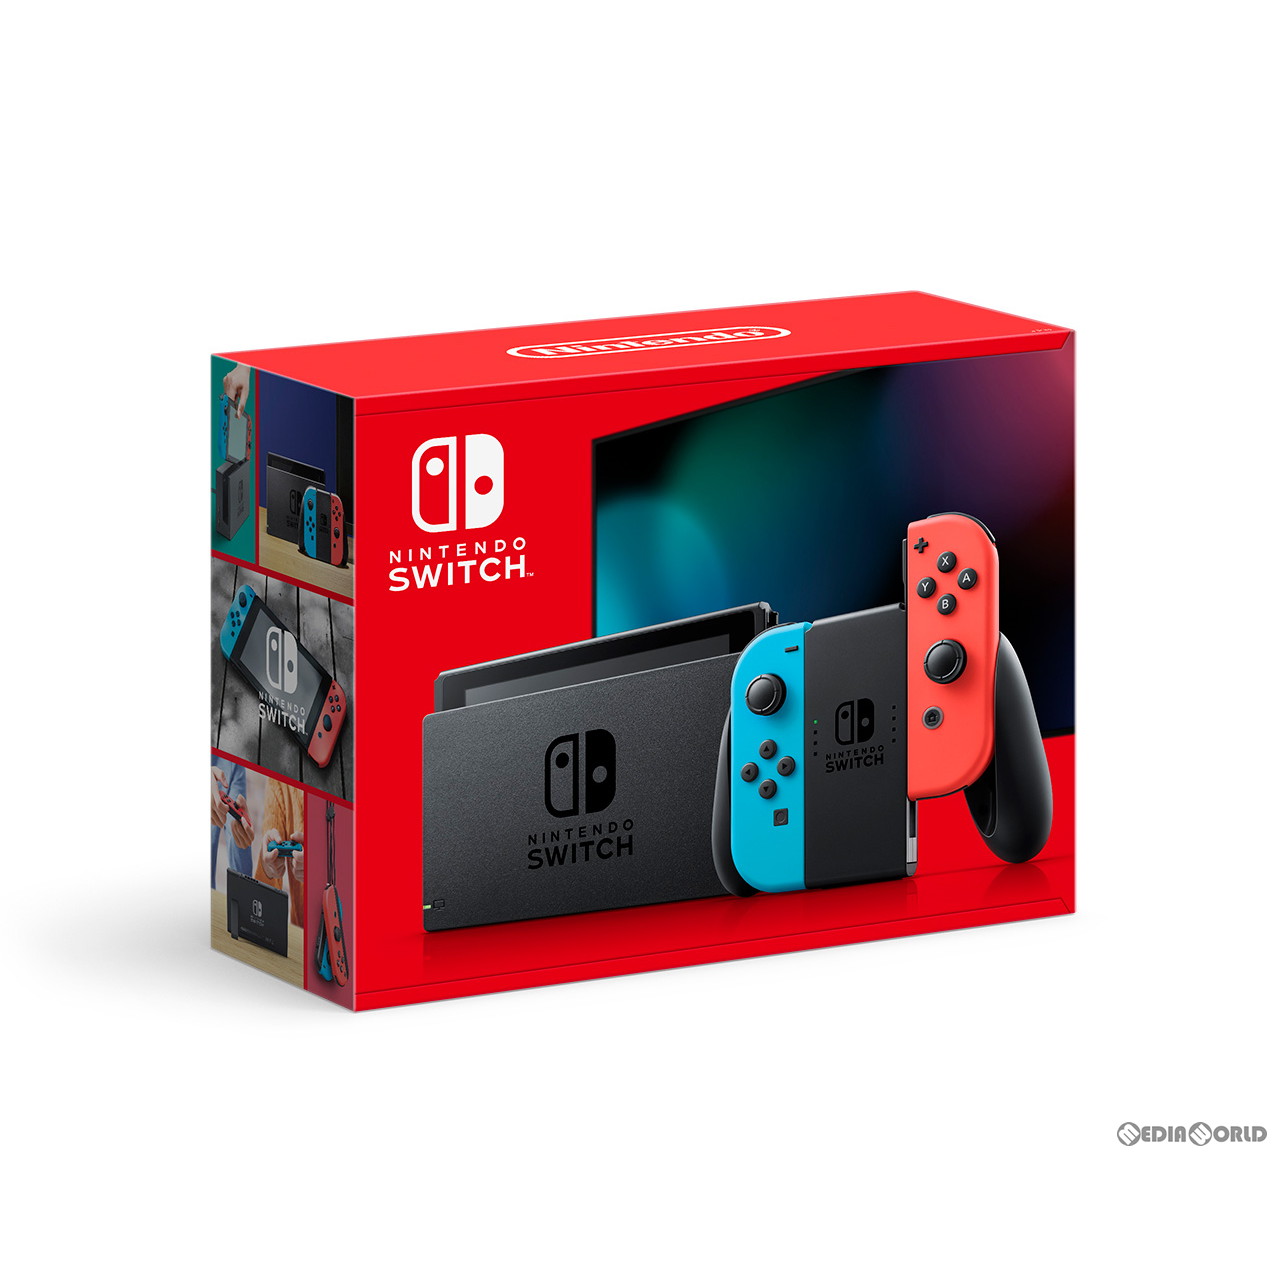 本体][Switch]Nintendo Switch(ニンテンドースイッチ) Joy-Con(L) (R